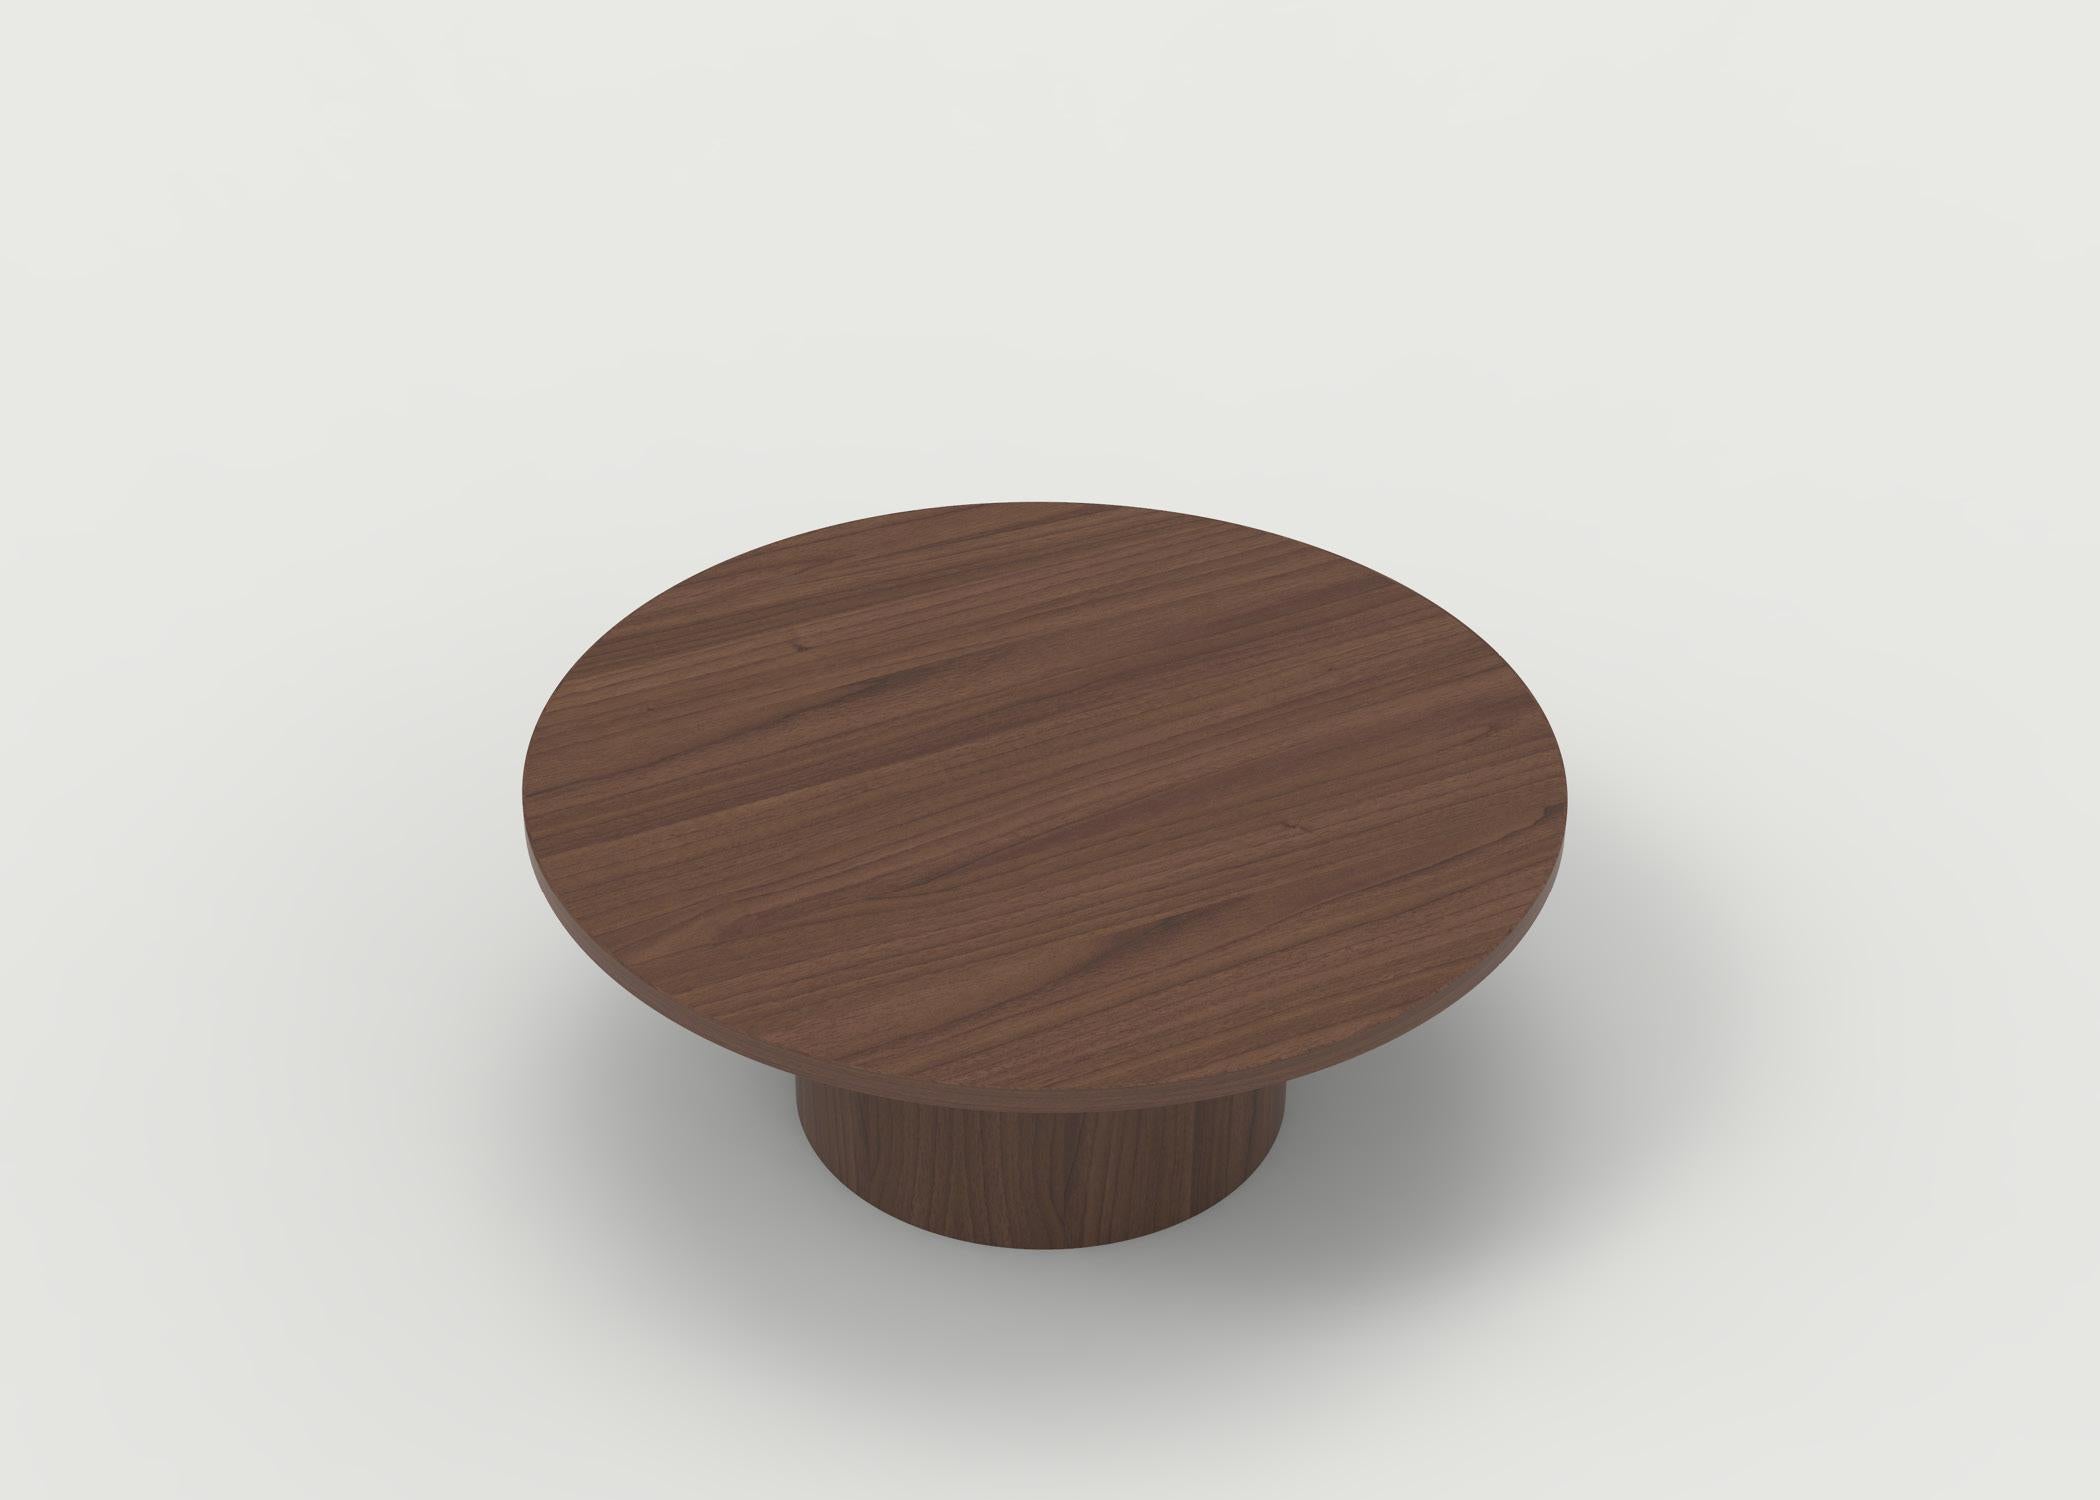 La table basse Benson est représentée avec un plateau en bois de chêne en finition naturelle avec une base ronde et des poteaux ronds peints. Il peut être personnalisé dans le bois et la finition de votre choix, ainsi que dans sa taille. Le prix